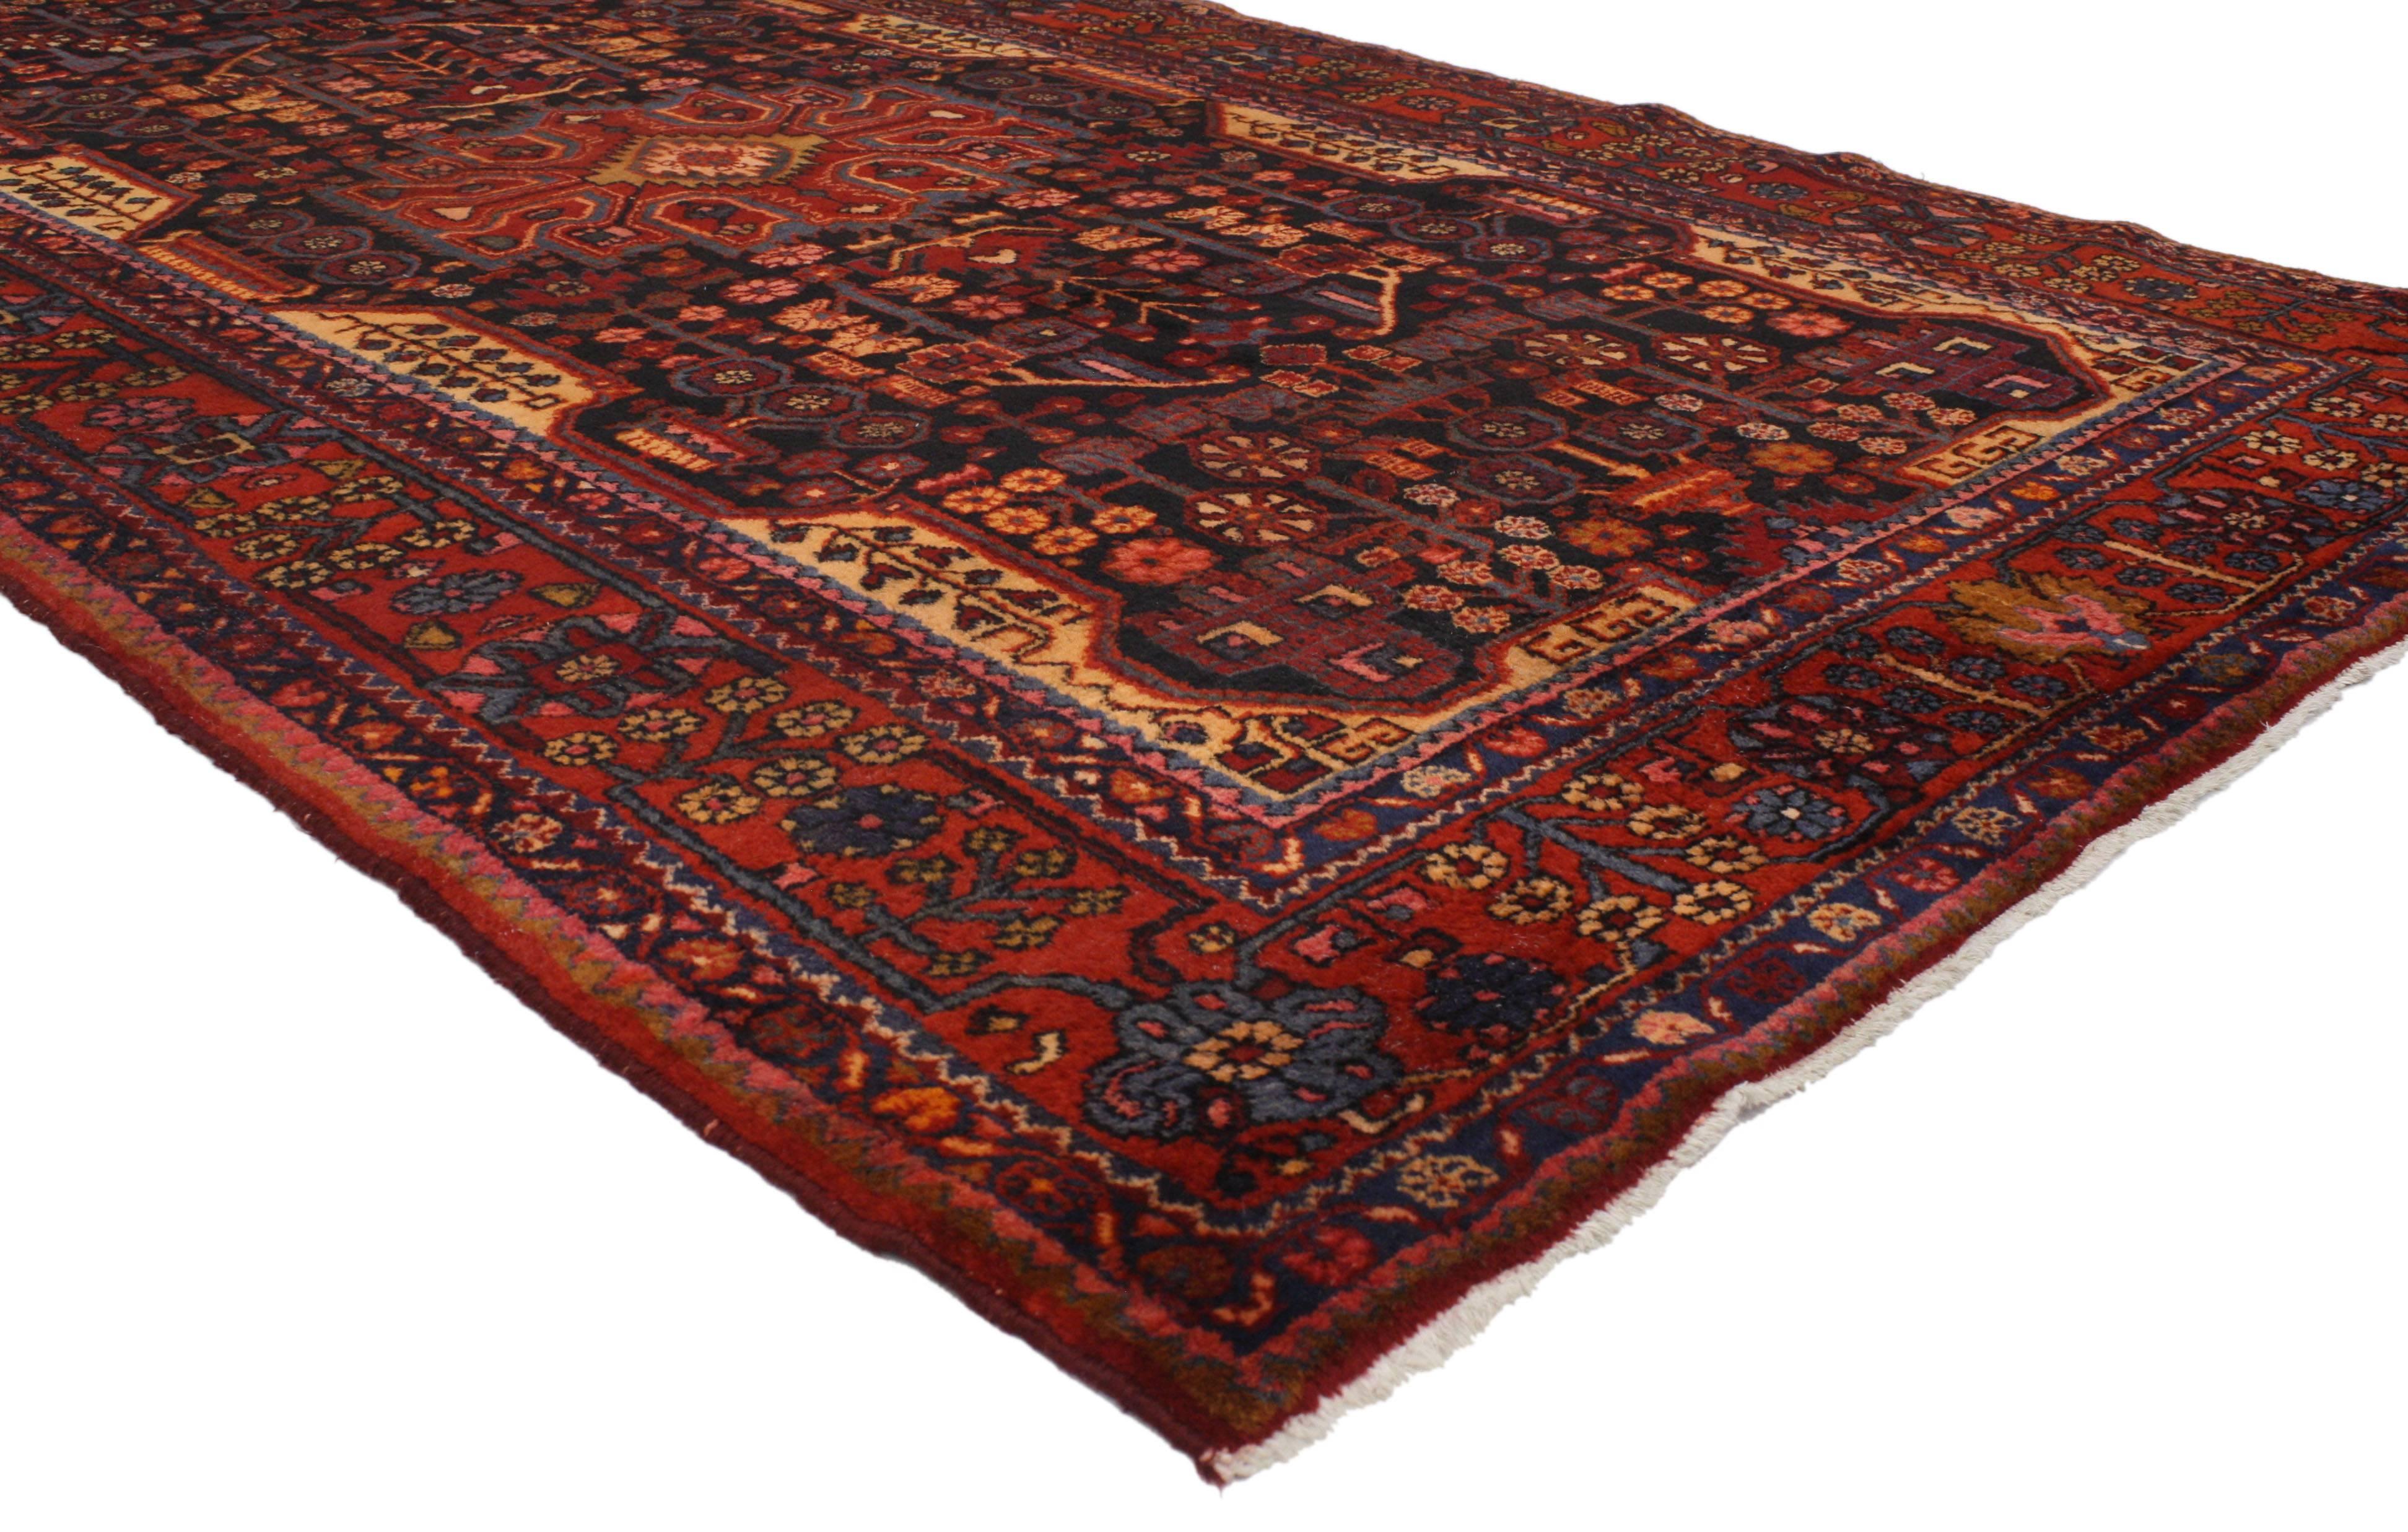 Plein de caractère et d'une présence majestueuse, cet ancien tapis galerie persan Hamadan de style tribal moderne présente un design géométrique extravagant rendu dans de magnifiques nuances variées de noir minuit, bleu marine, orange, rouge, brun,